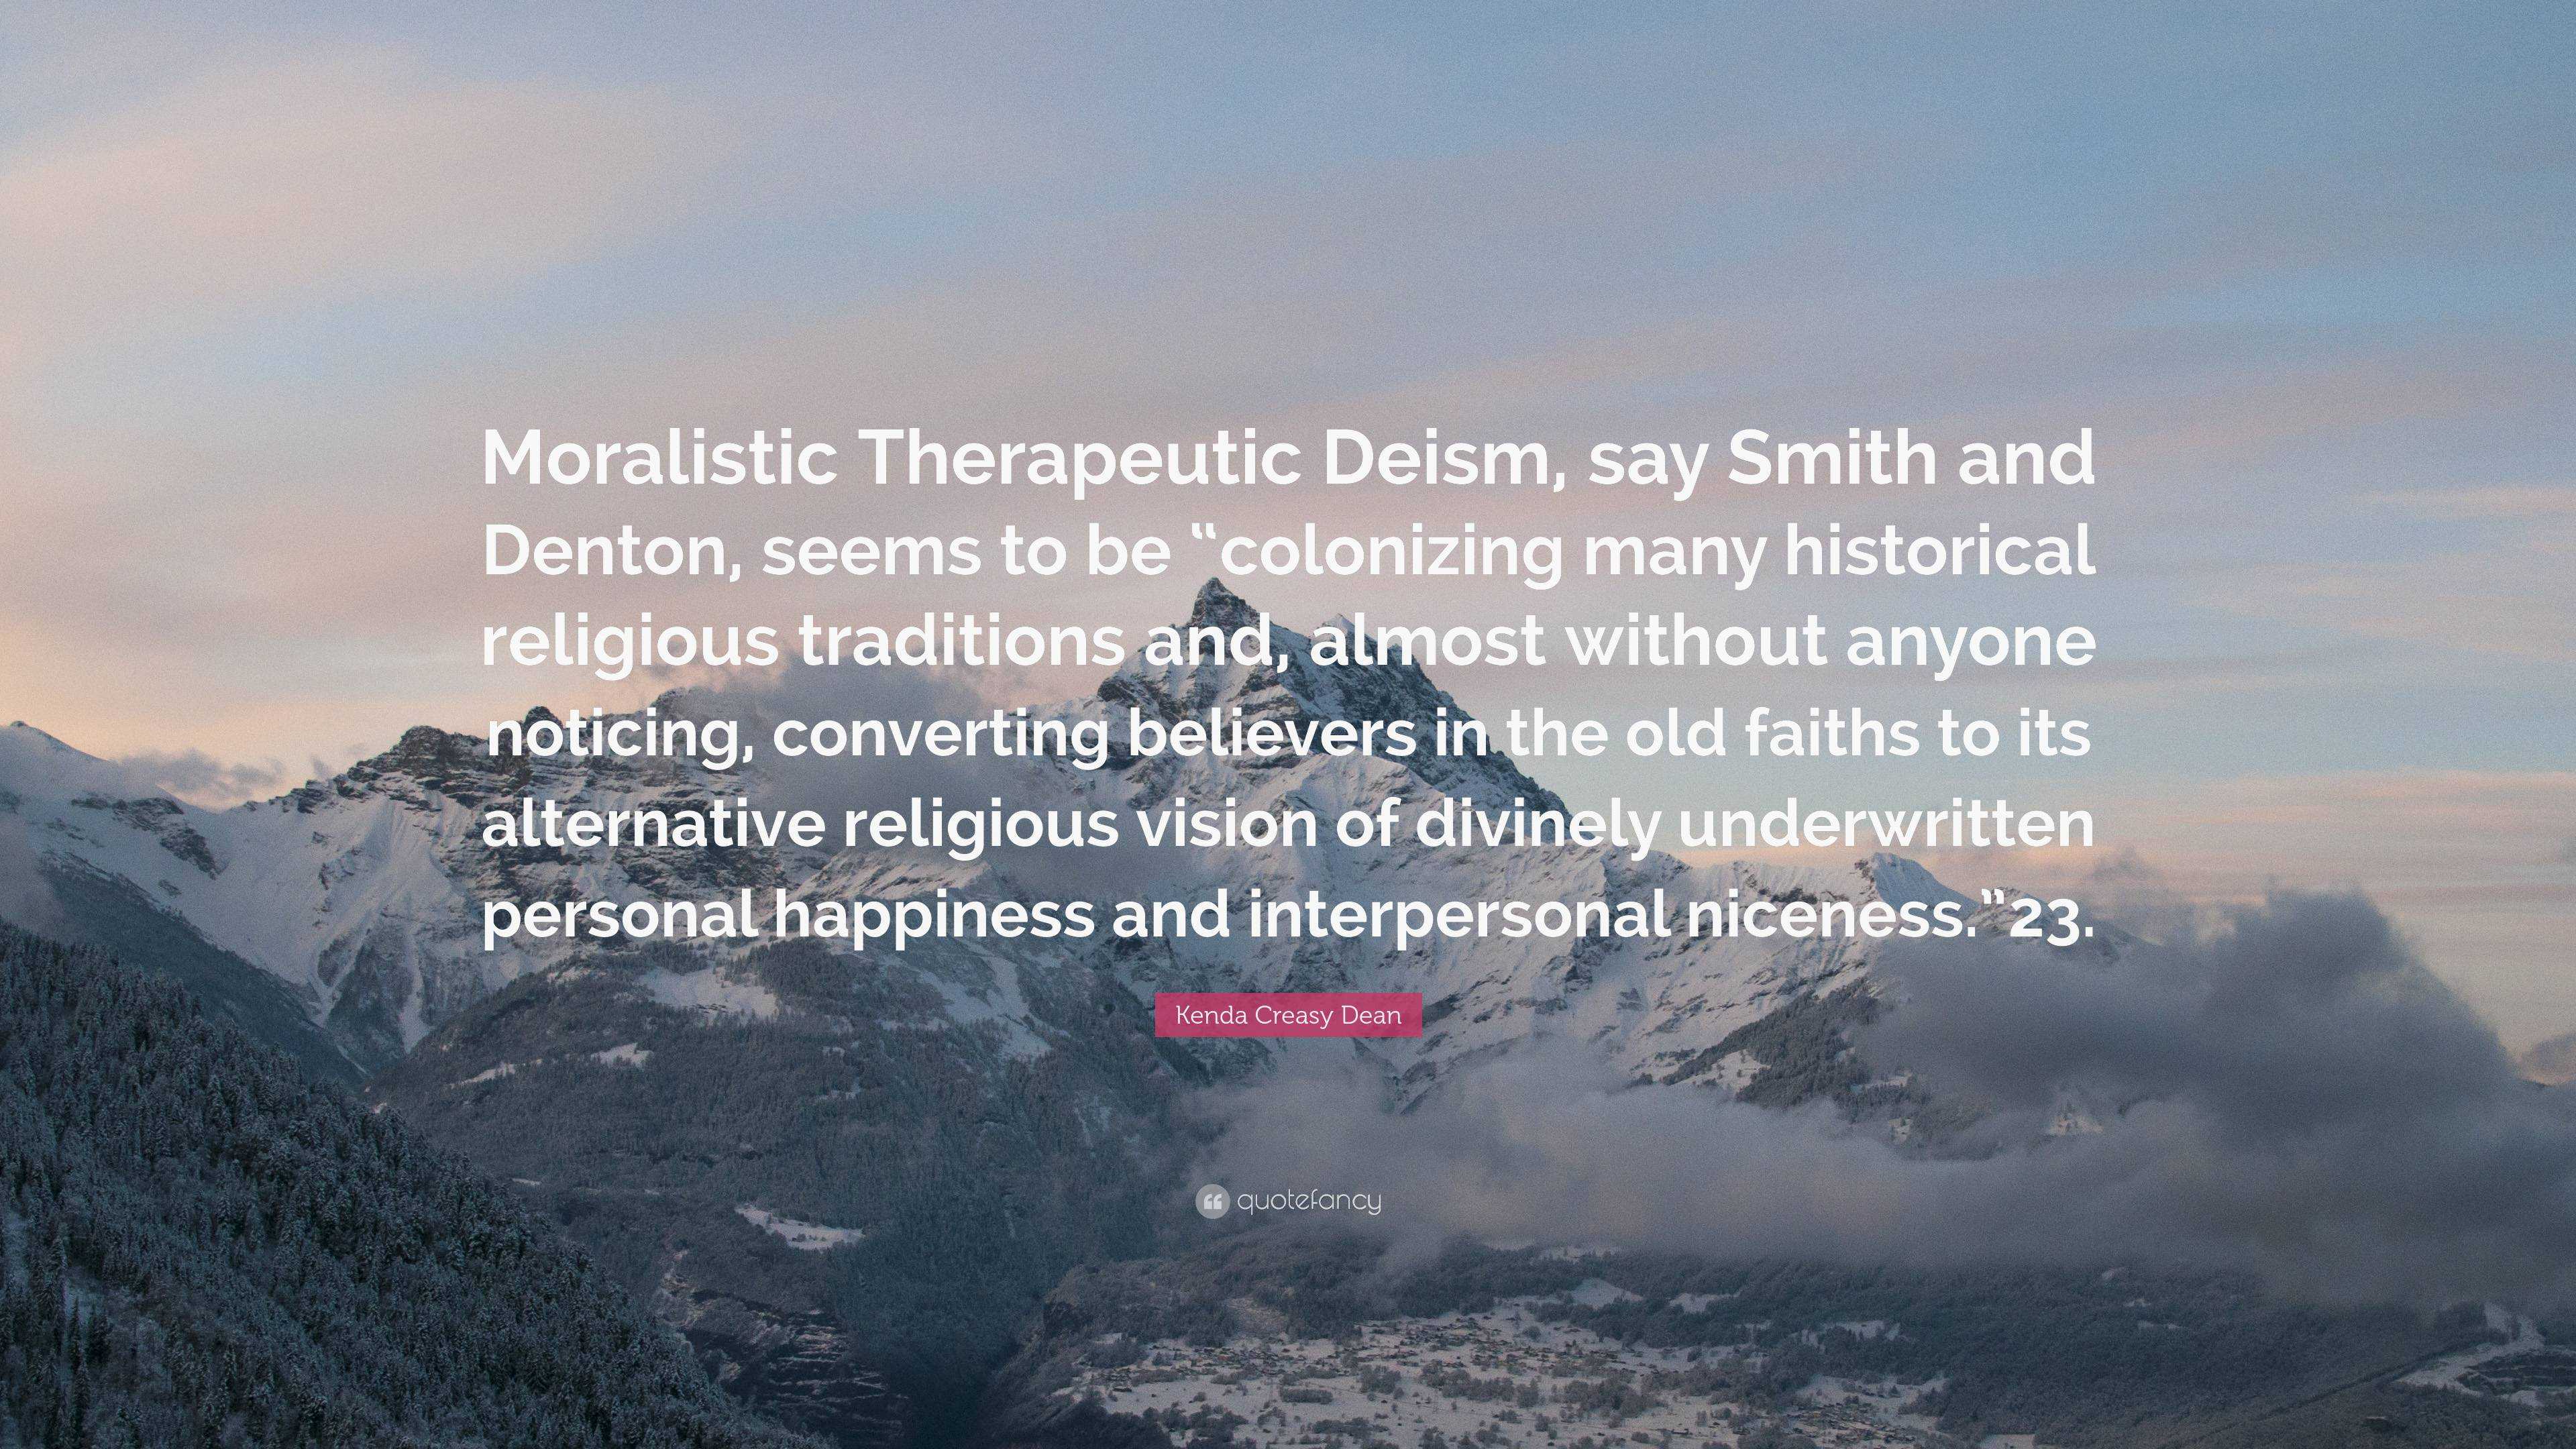 Kenda Creasy Dean Quote: “Moralistic Therapeutic Deism, say Smith